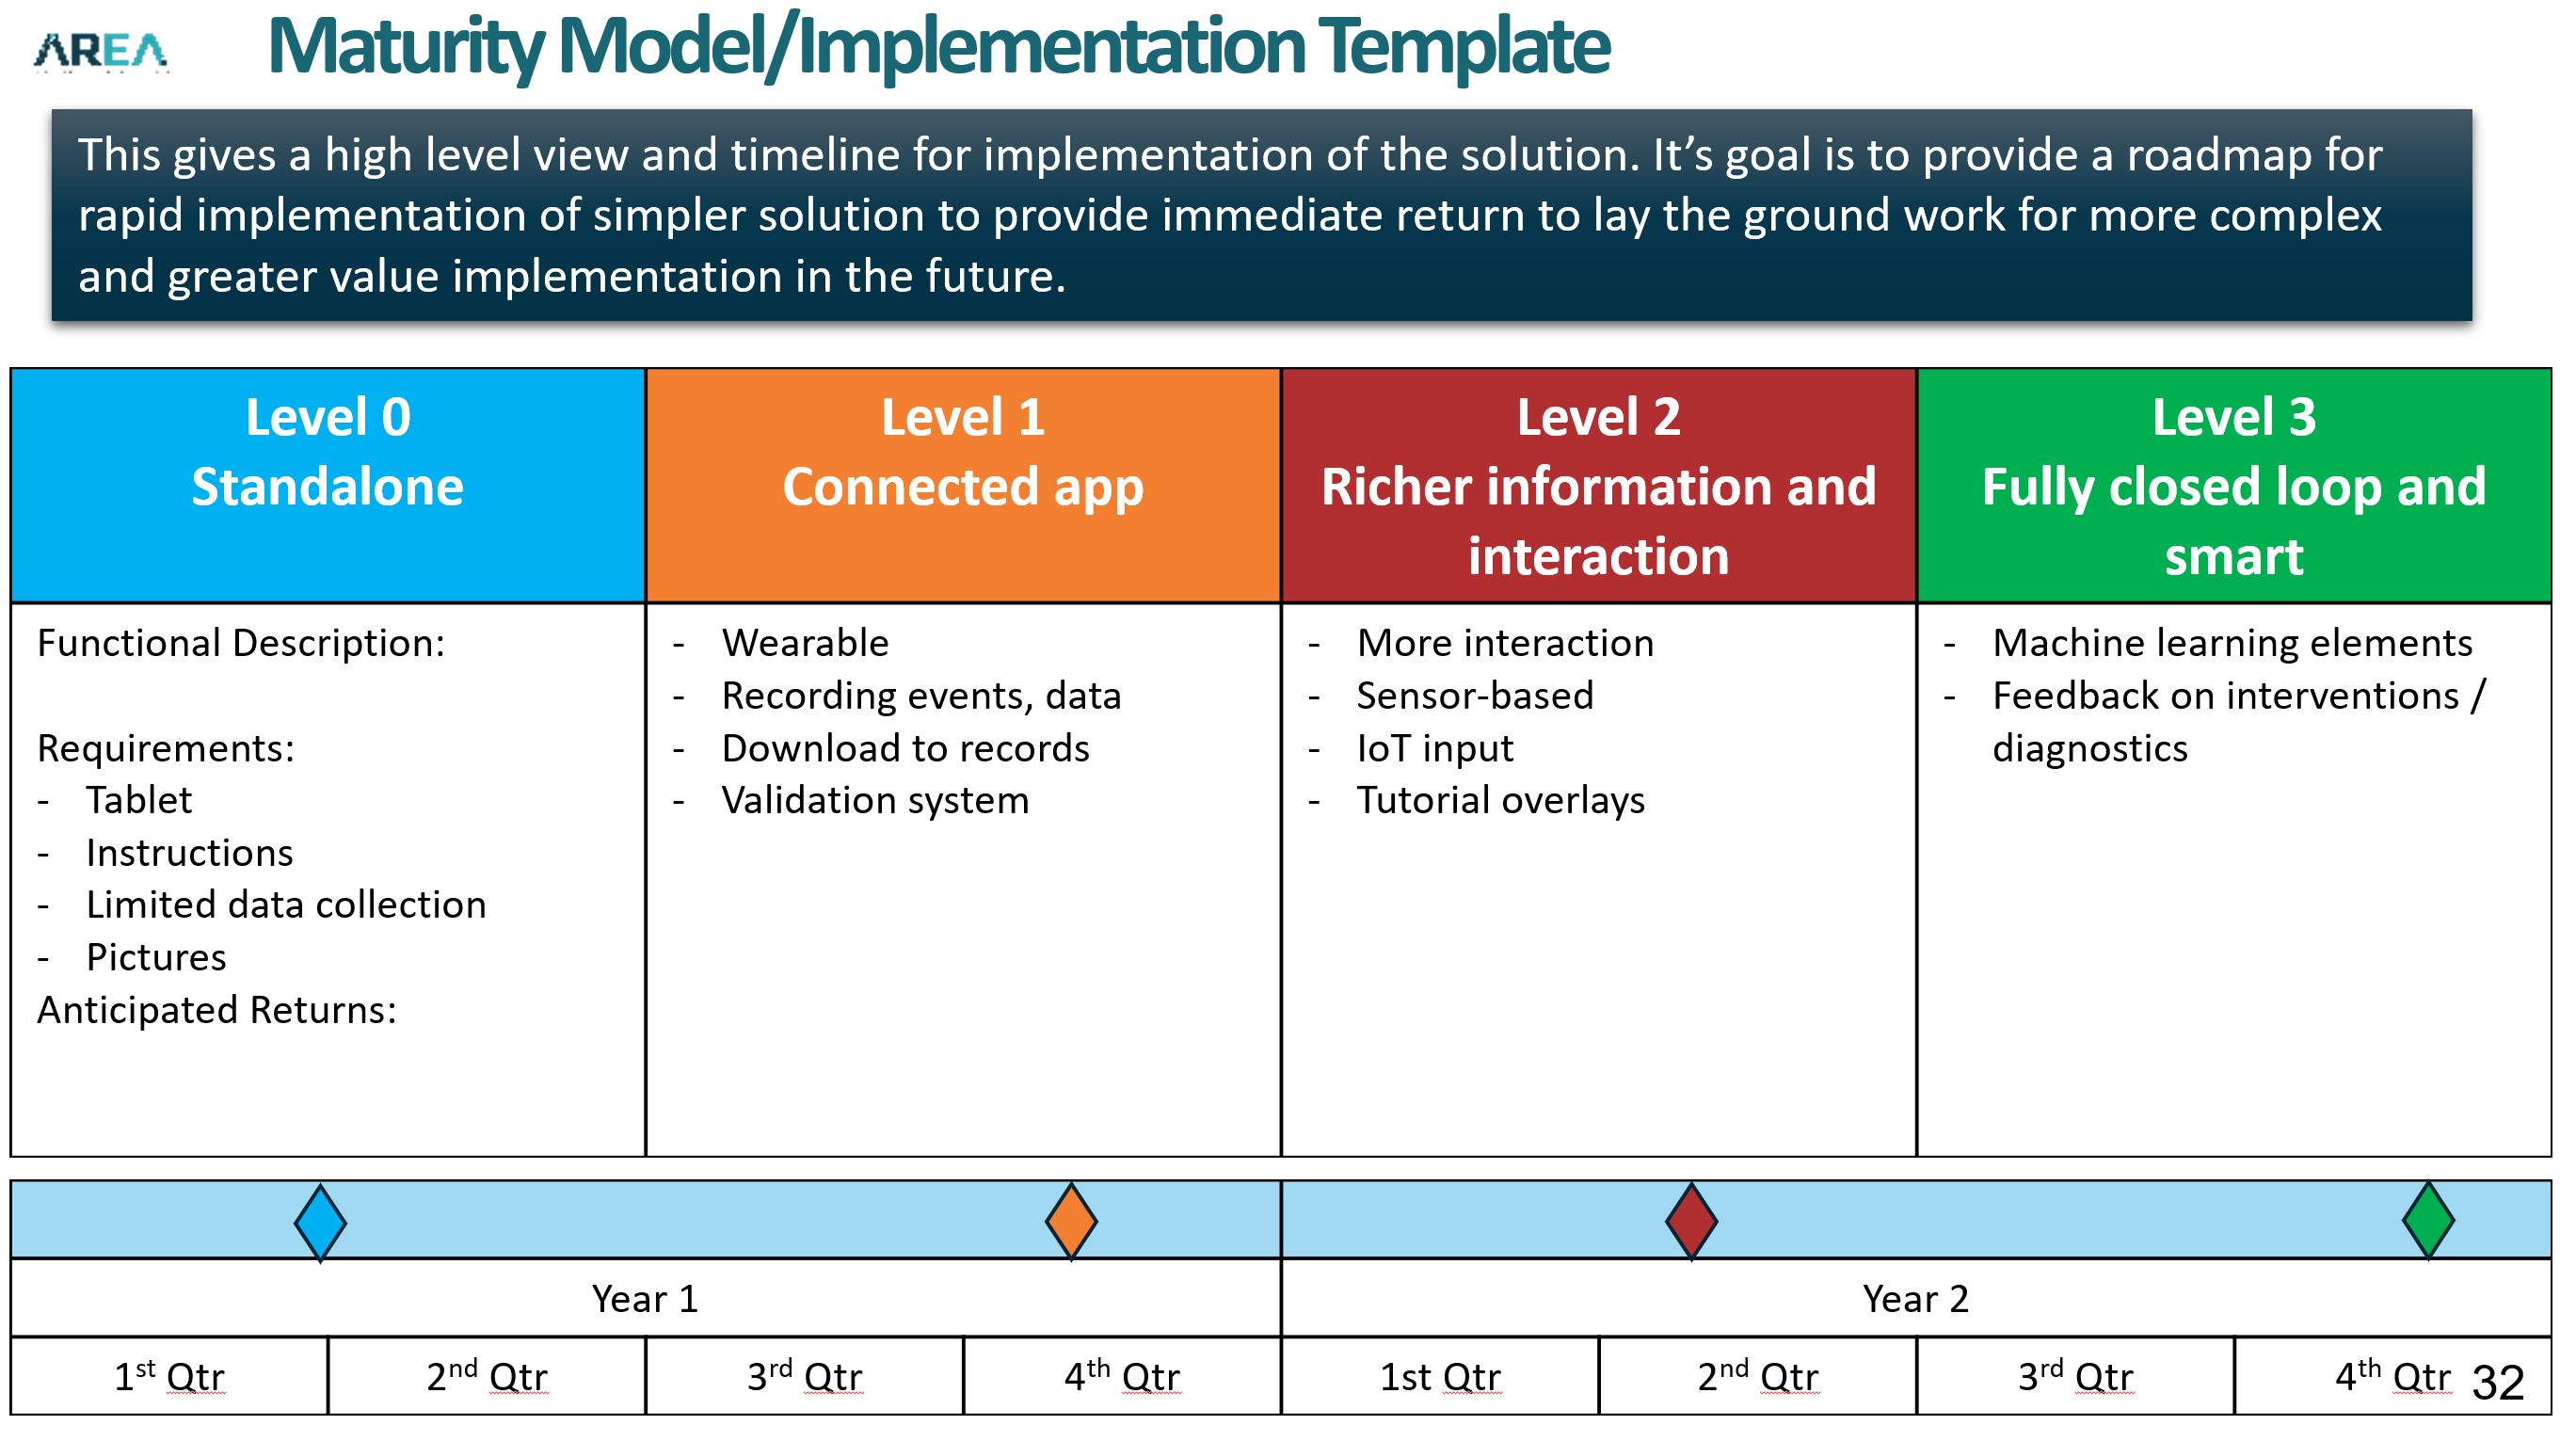 Maturity Model Implementation Template AREA